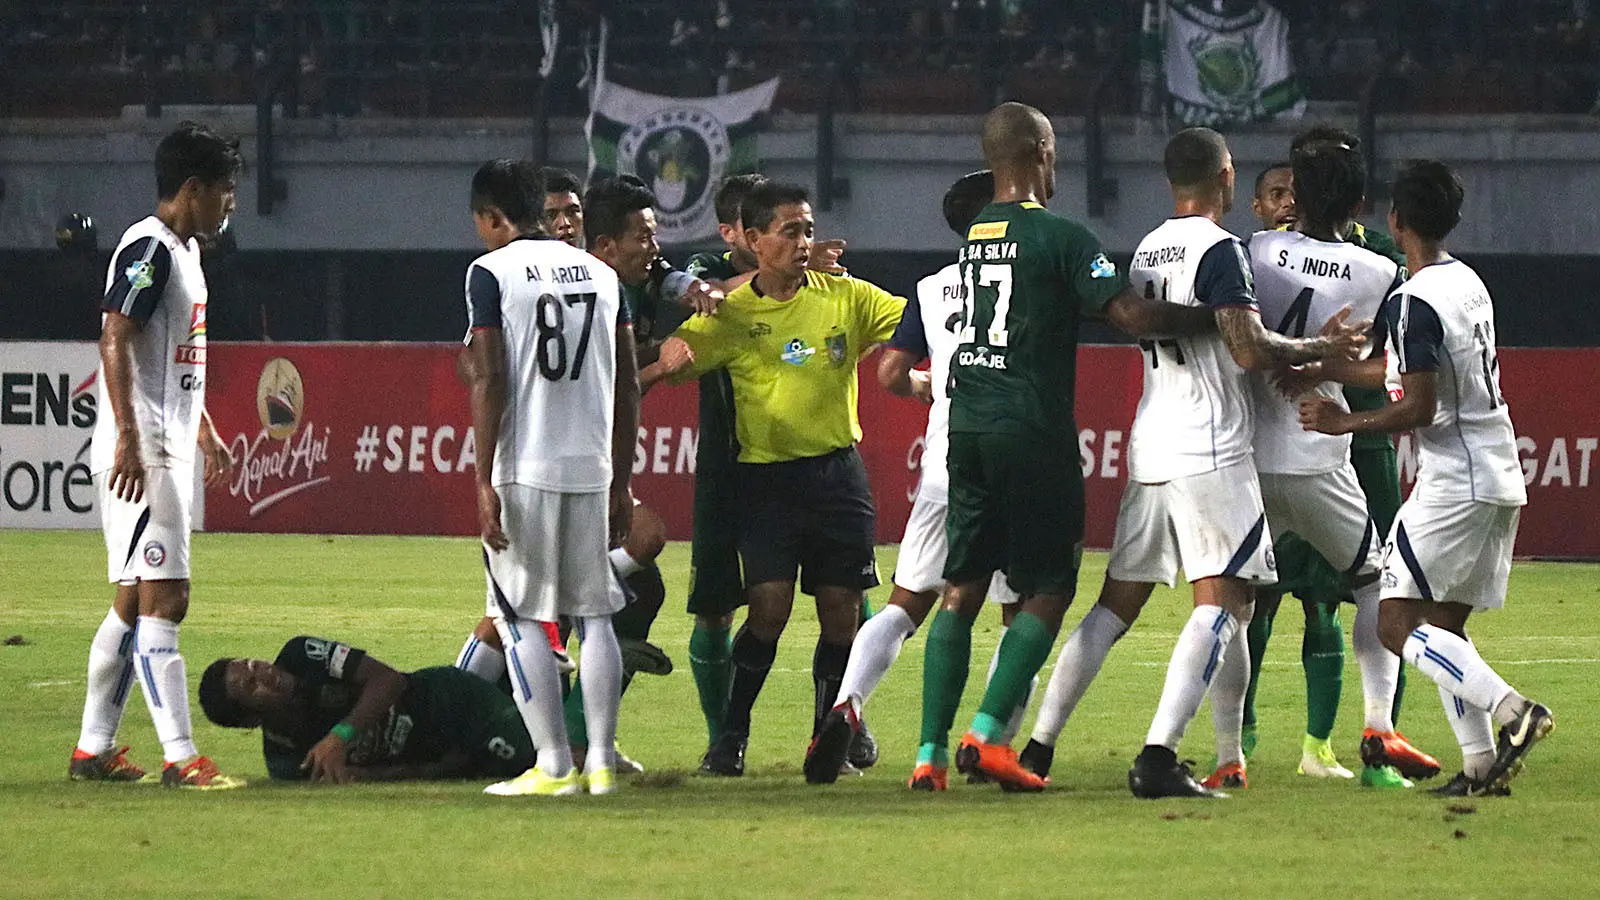 Insiden kartu merah pada laga Persebaya vs Arema di Stadion Gelora Bung Tomo, Surabaya, Minggu (6/5/2018). (Bola.com/Aditya Wany)